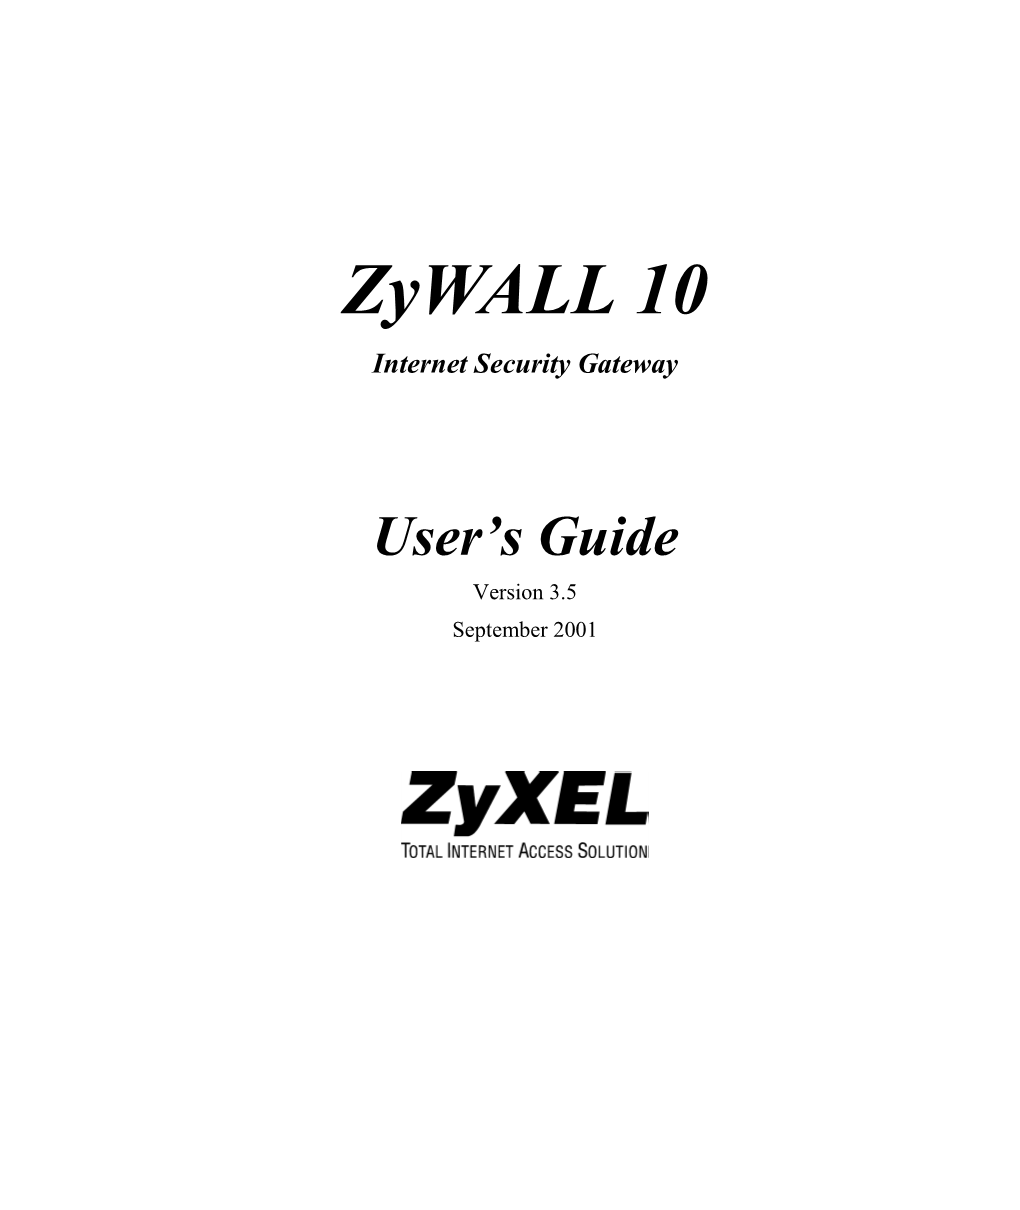 Zywall 10 Internet Security Gateway